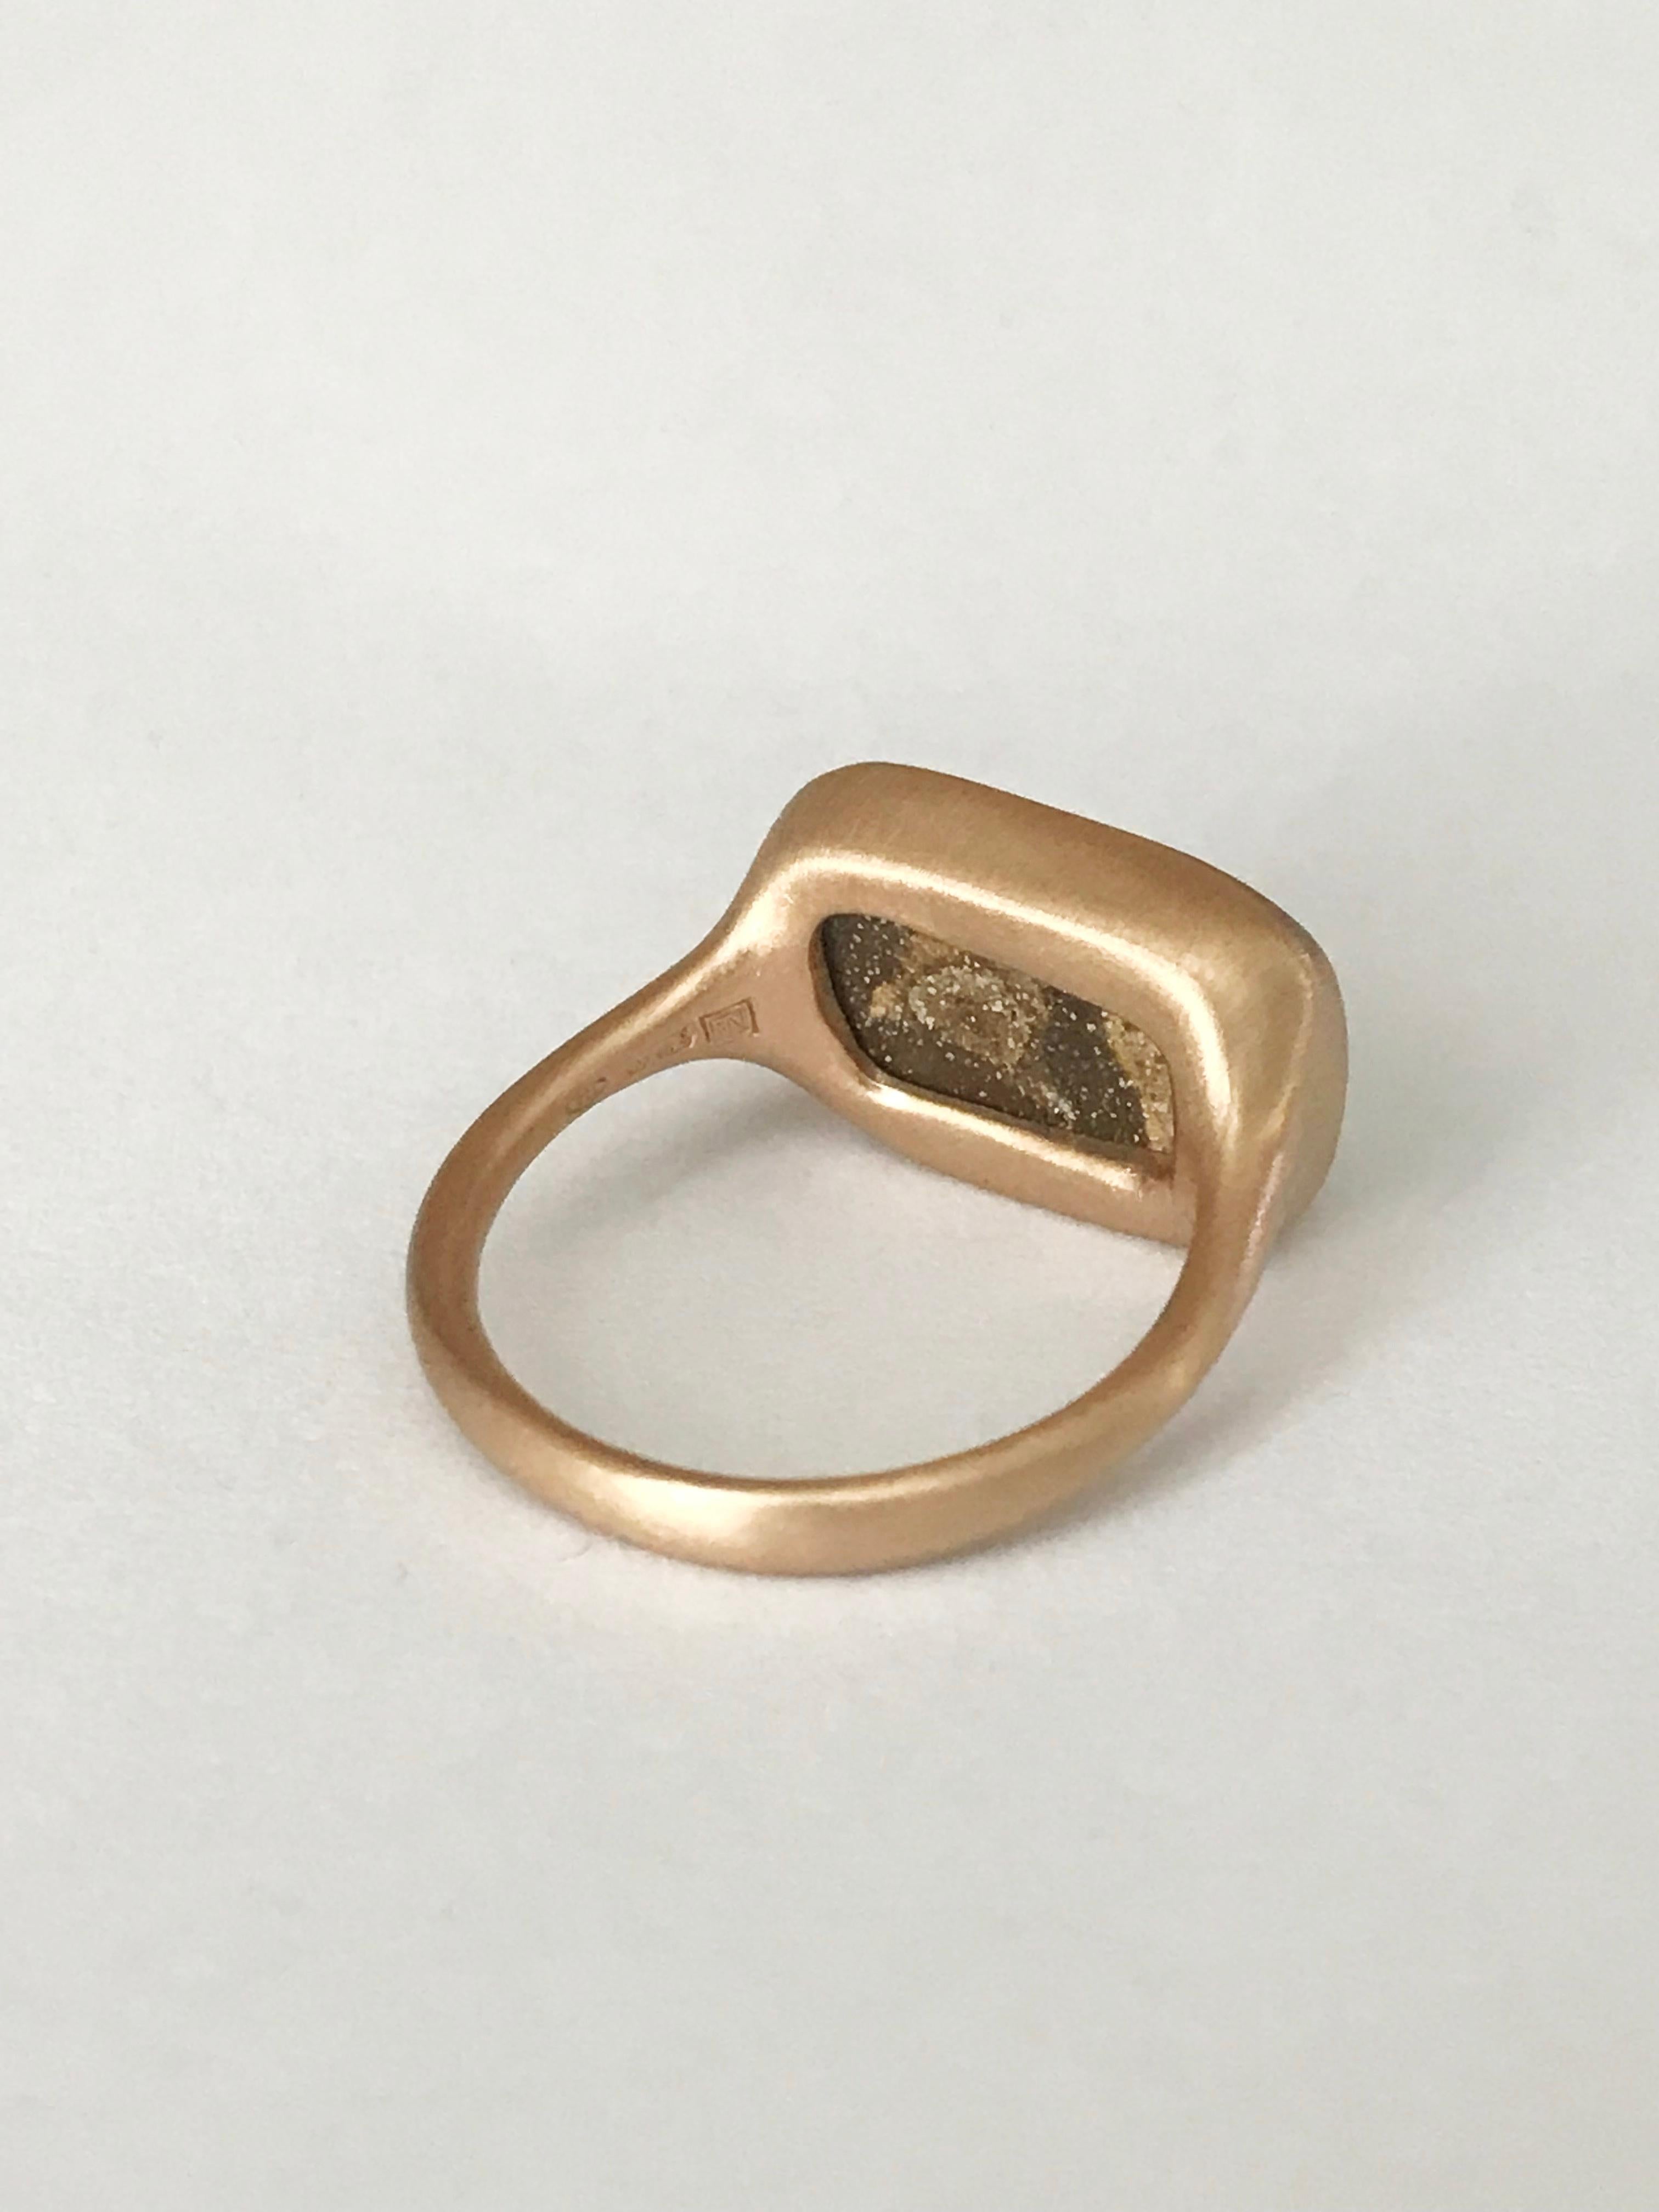 Dalben Boulder Opal Rose Gold Ring For Sale 3